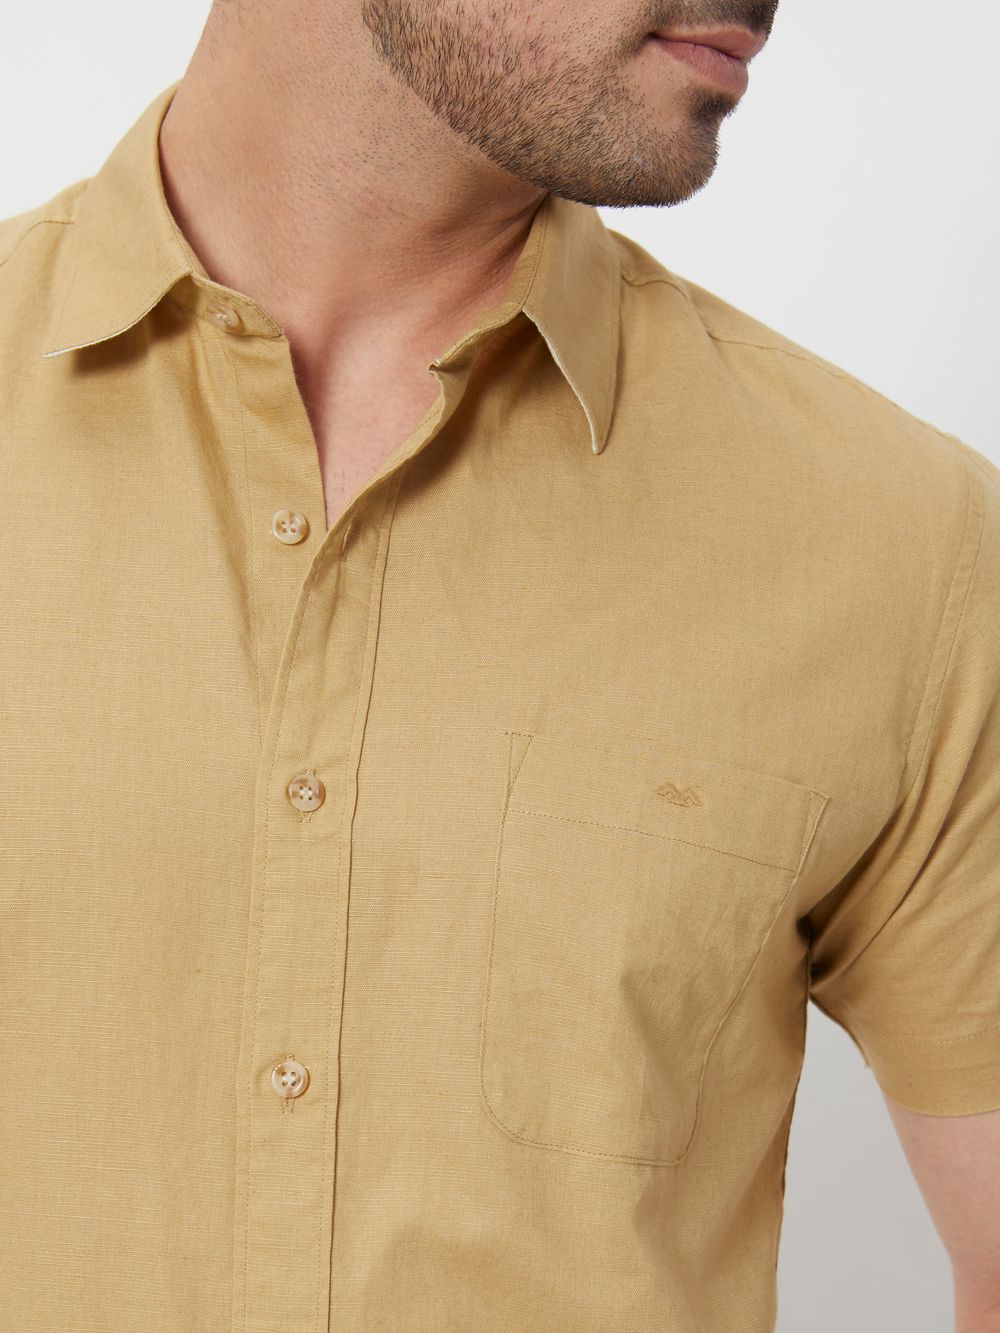 Khaki Cotton Linen Plain Slim Fit Casual Shirt